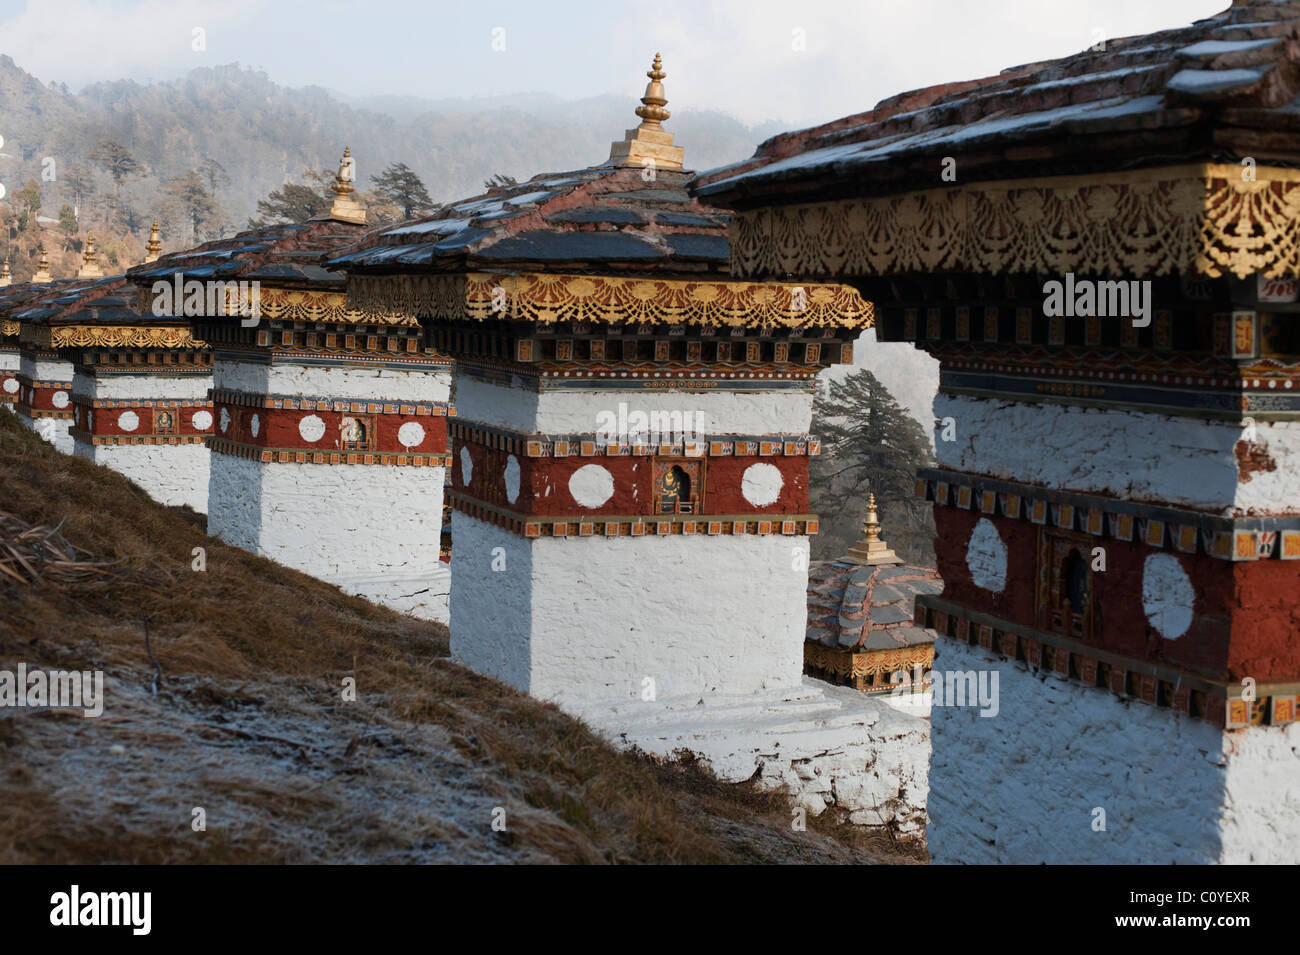 Eine Reihe von Memorial Kapellen in zentralen Bhutan gebaut auf der Spitze einer großen zentralen Autobahn, einer der bhutanesischen Könige zu Ehren. Stockfoto